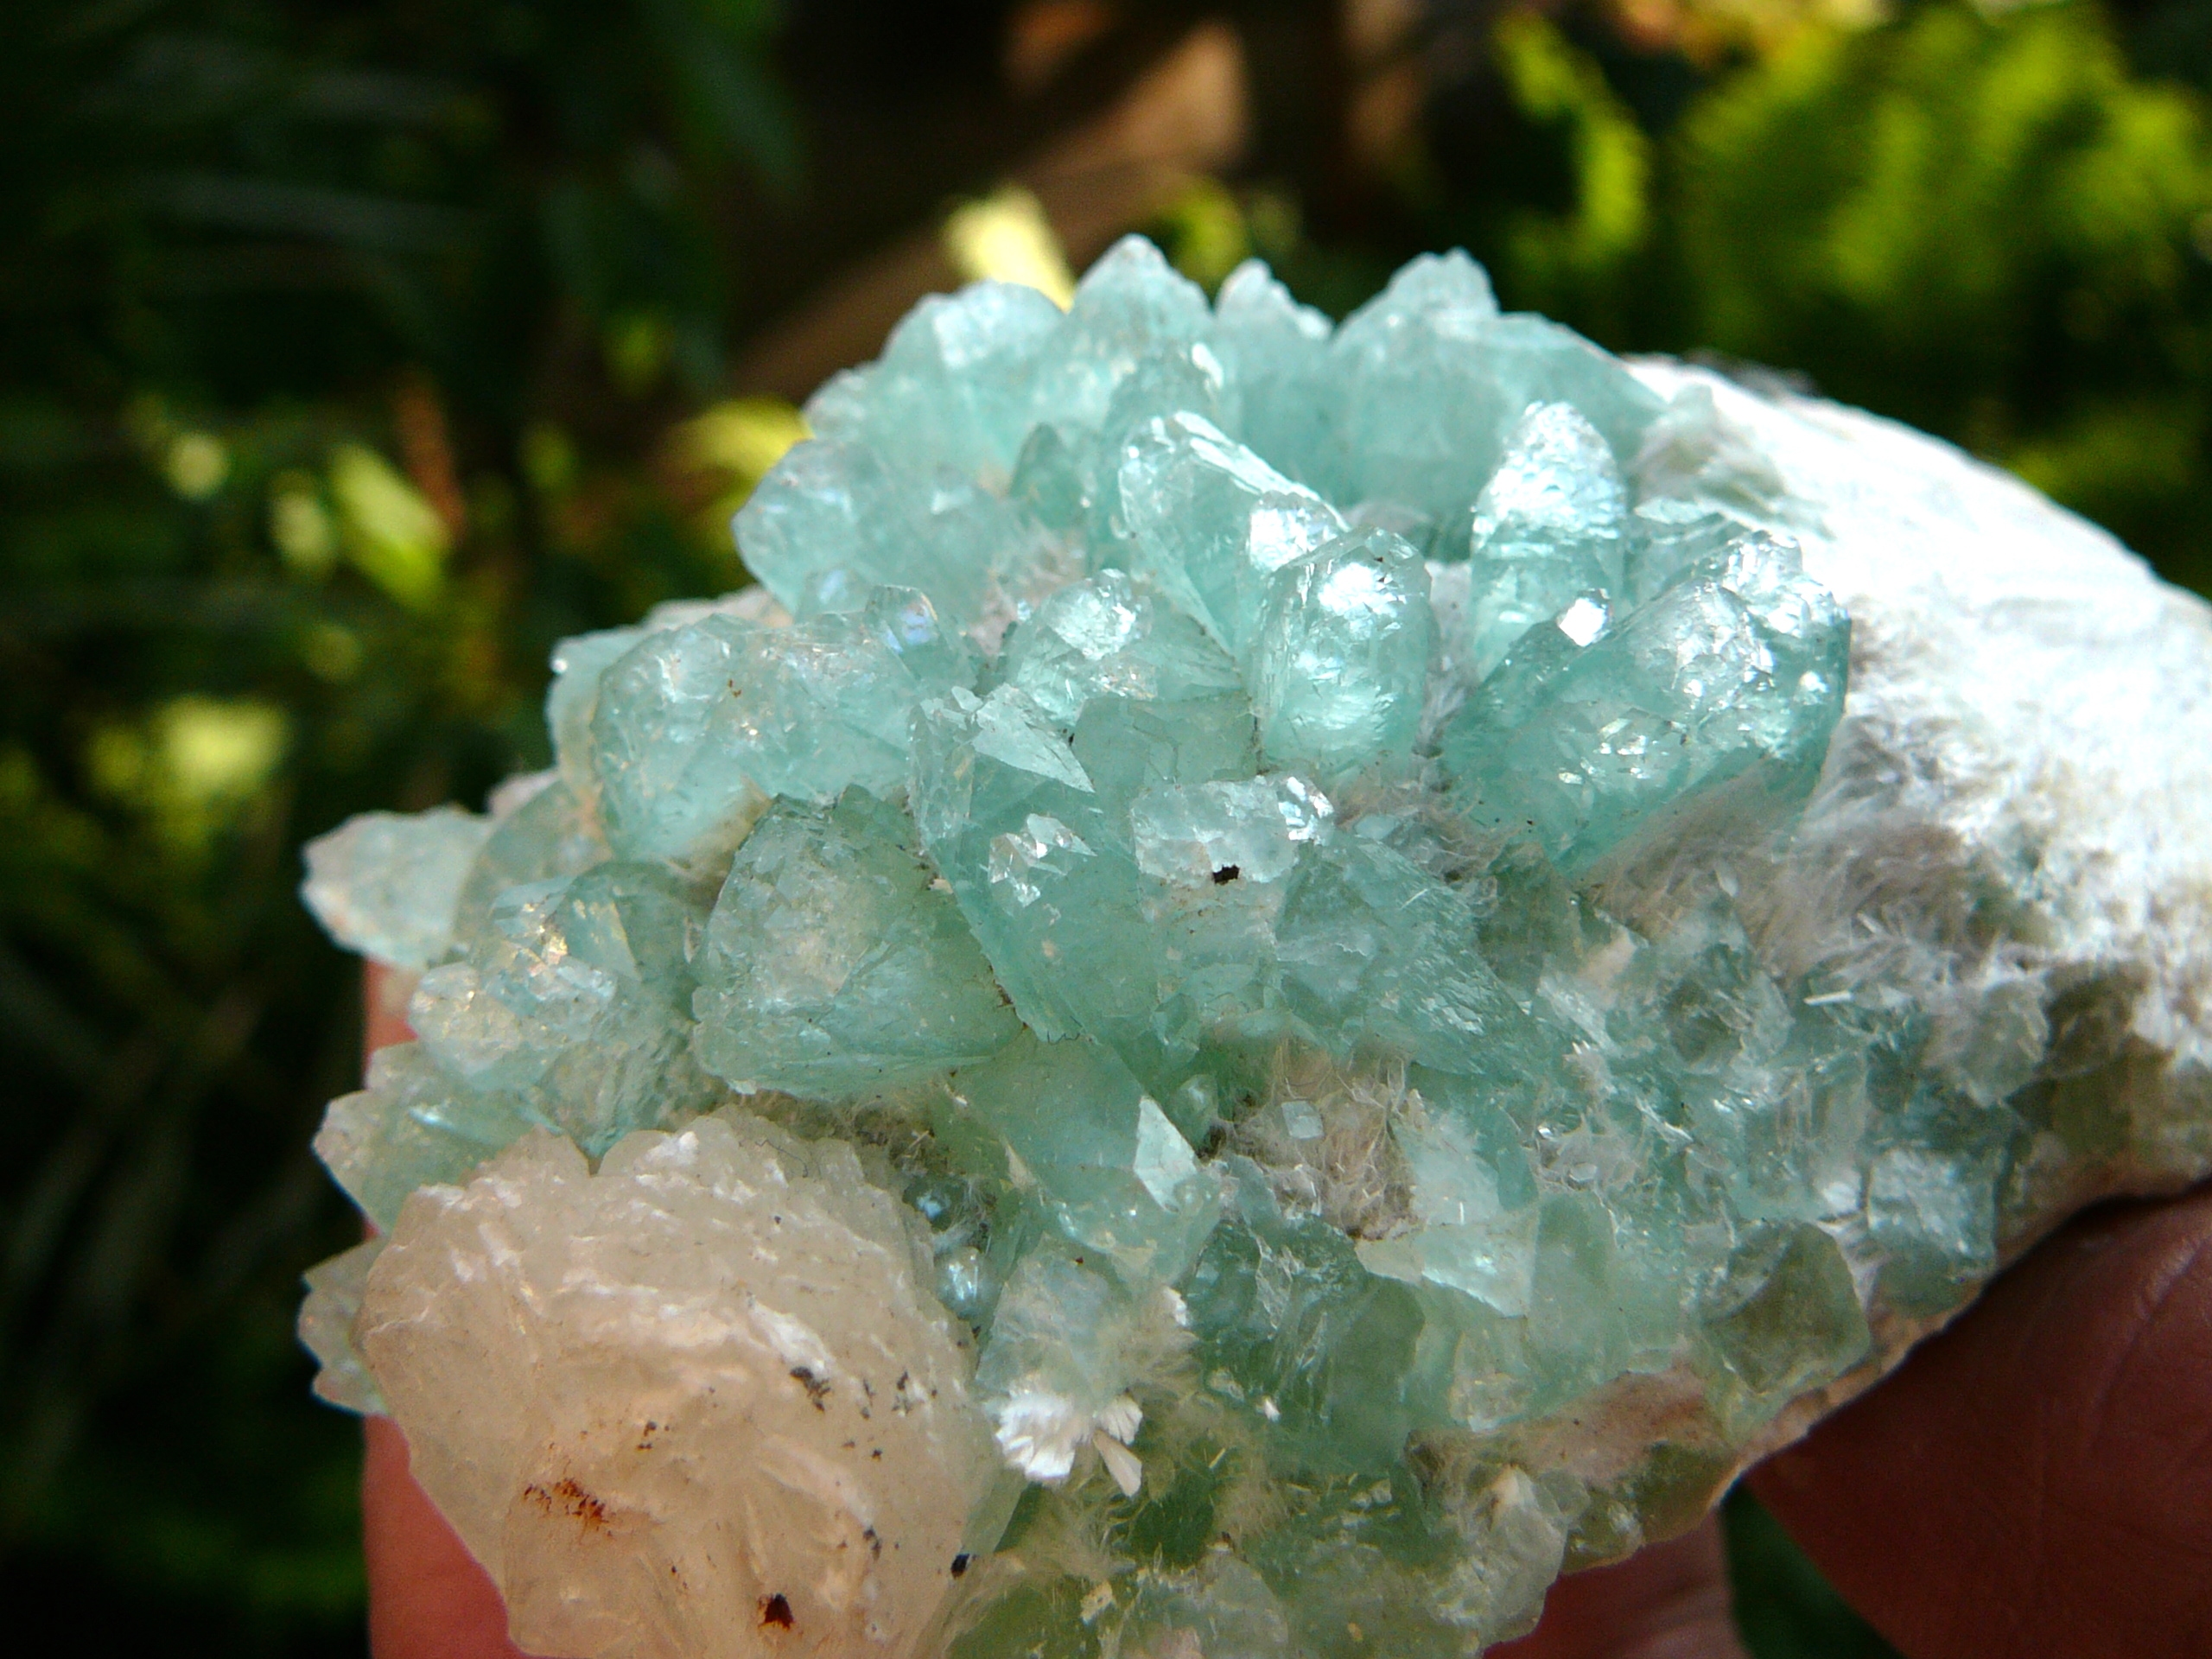 Fluor-Apophylite crystals